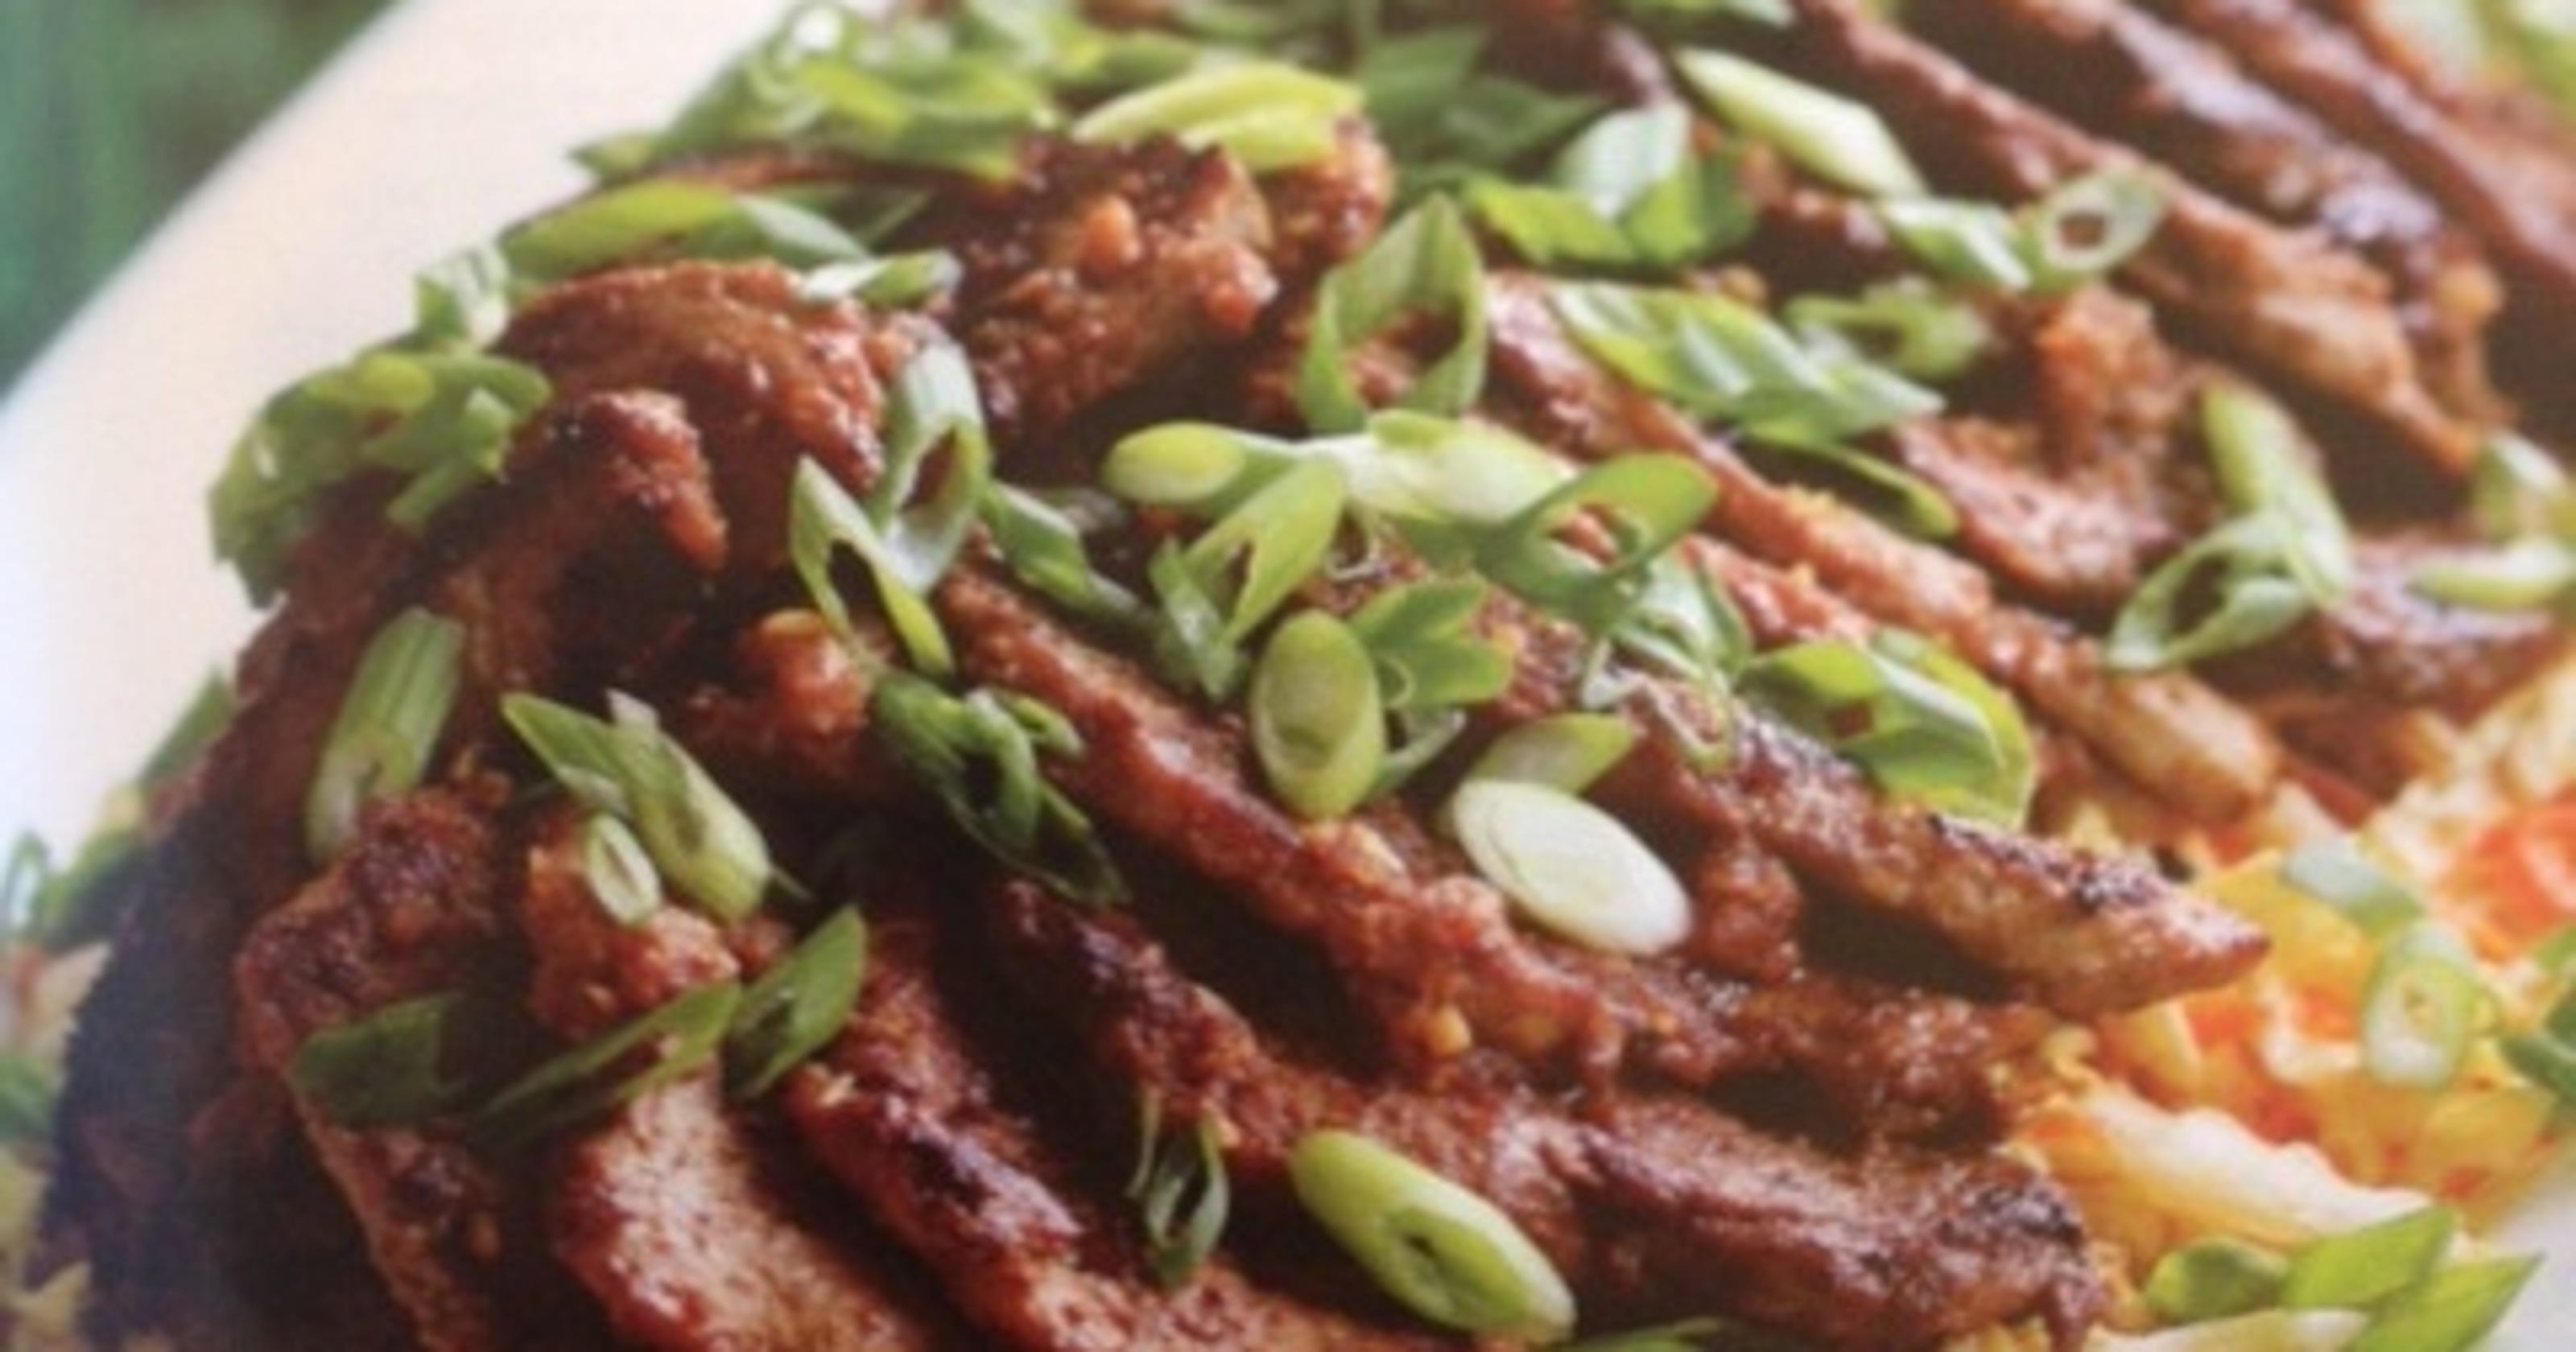 What's for Dinner? Korean-style pork with Asian slaw